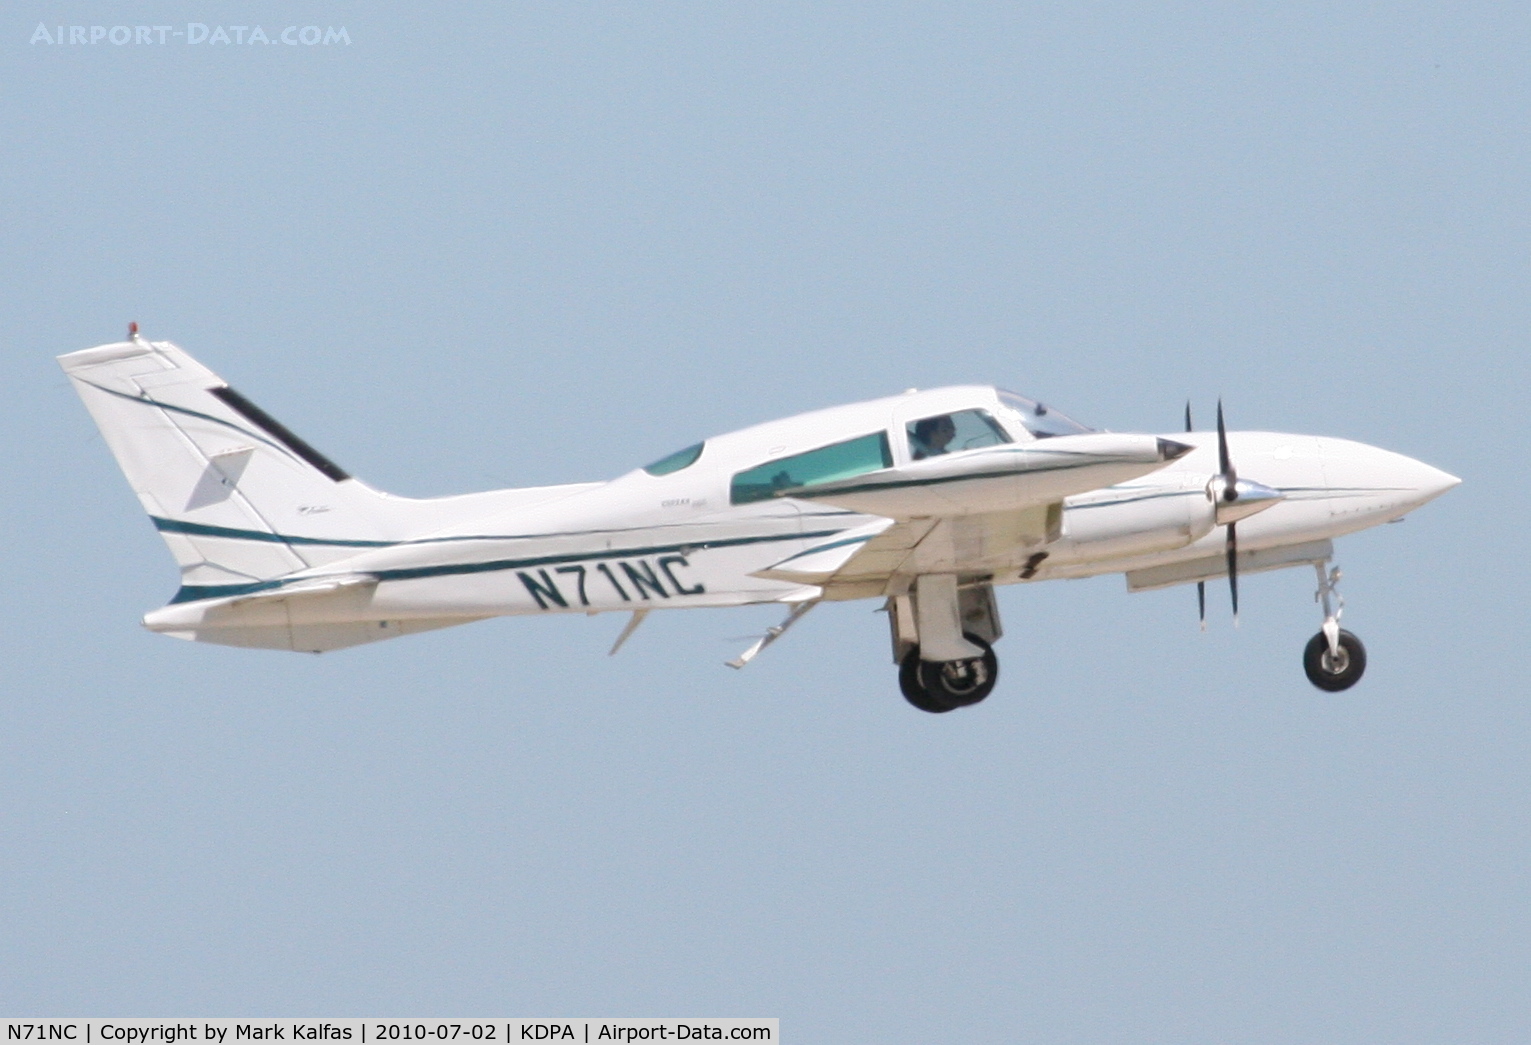 N71NC, 1978 Cessna 310R C/N 310R1426, CESSNA 310R N71NC departing 20R KDPA.